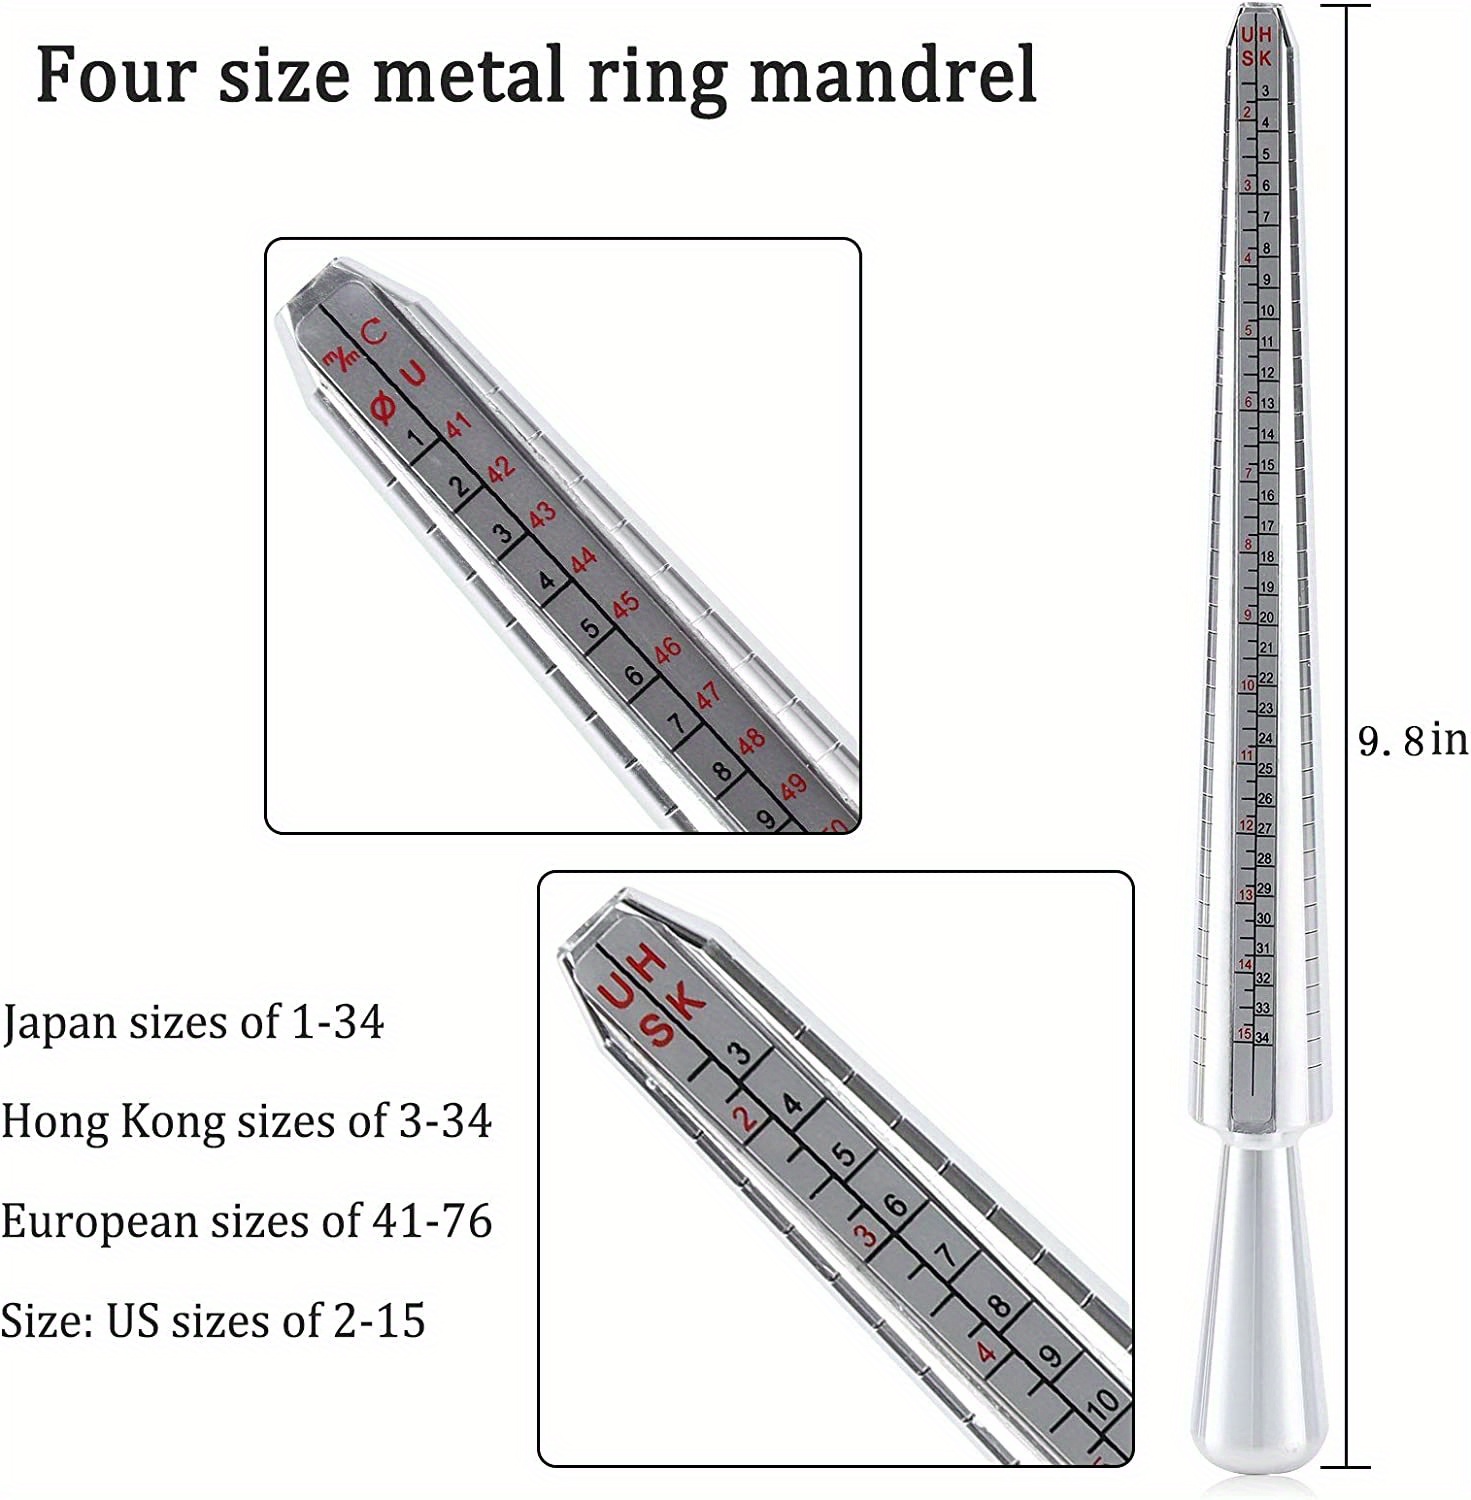 Thsue Ring Size Stick Mandrel Finger Gauge Ring Sizer Set Measuring Sizes  Jewelry Tool UK US General Purpose 